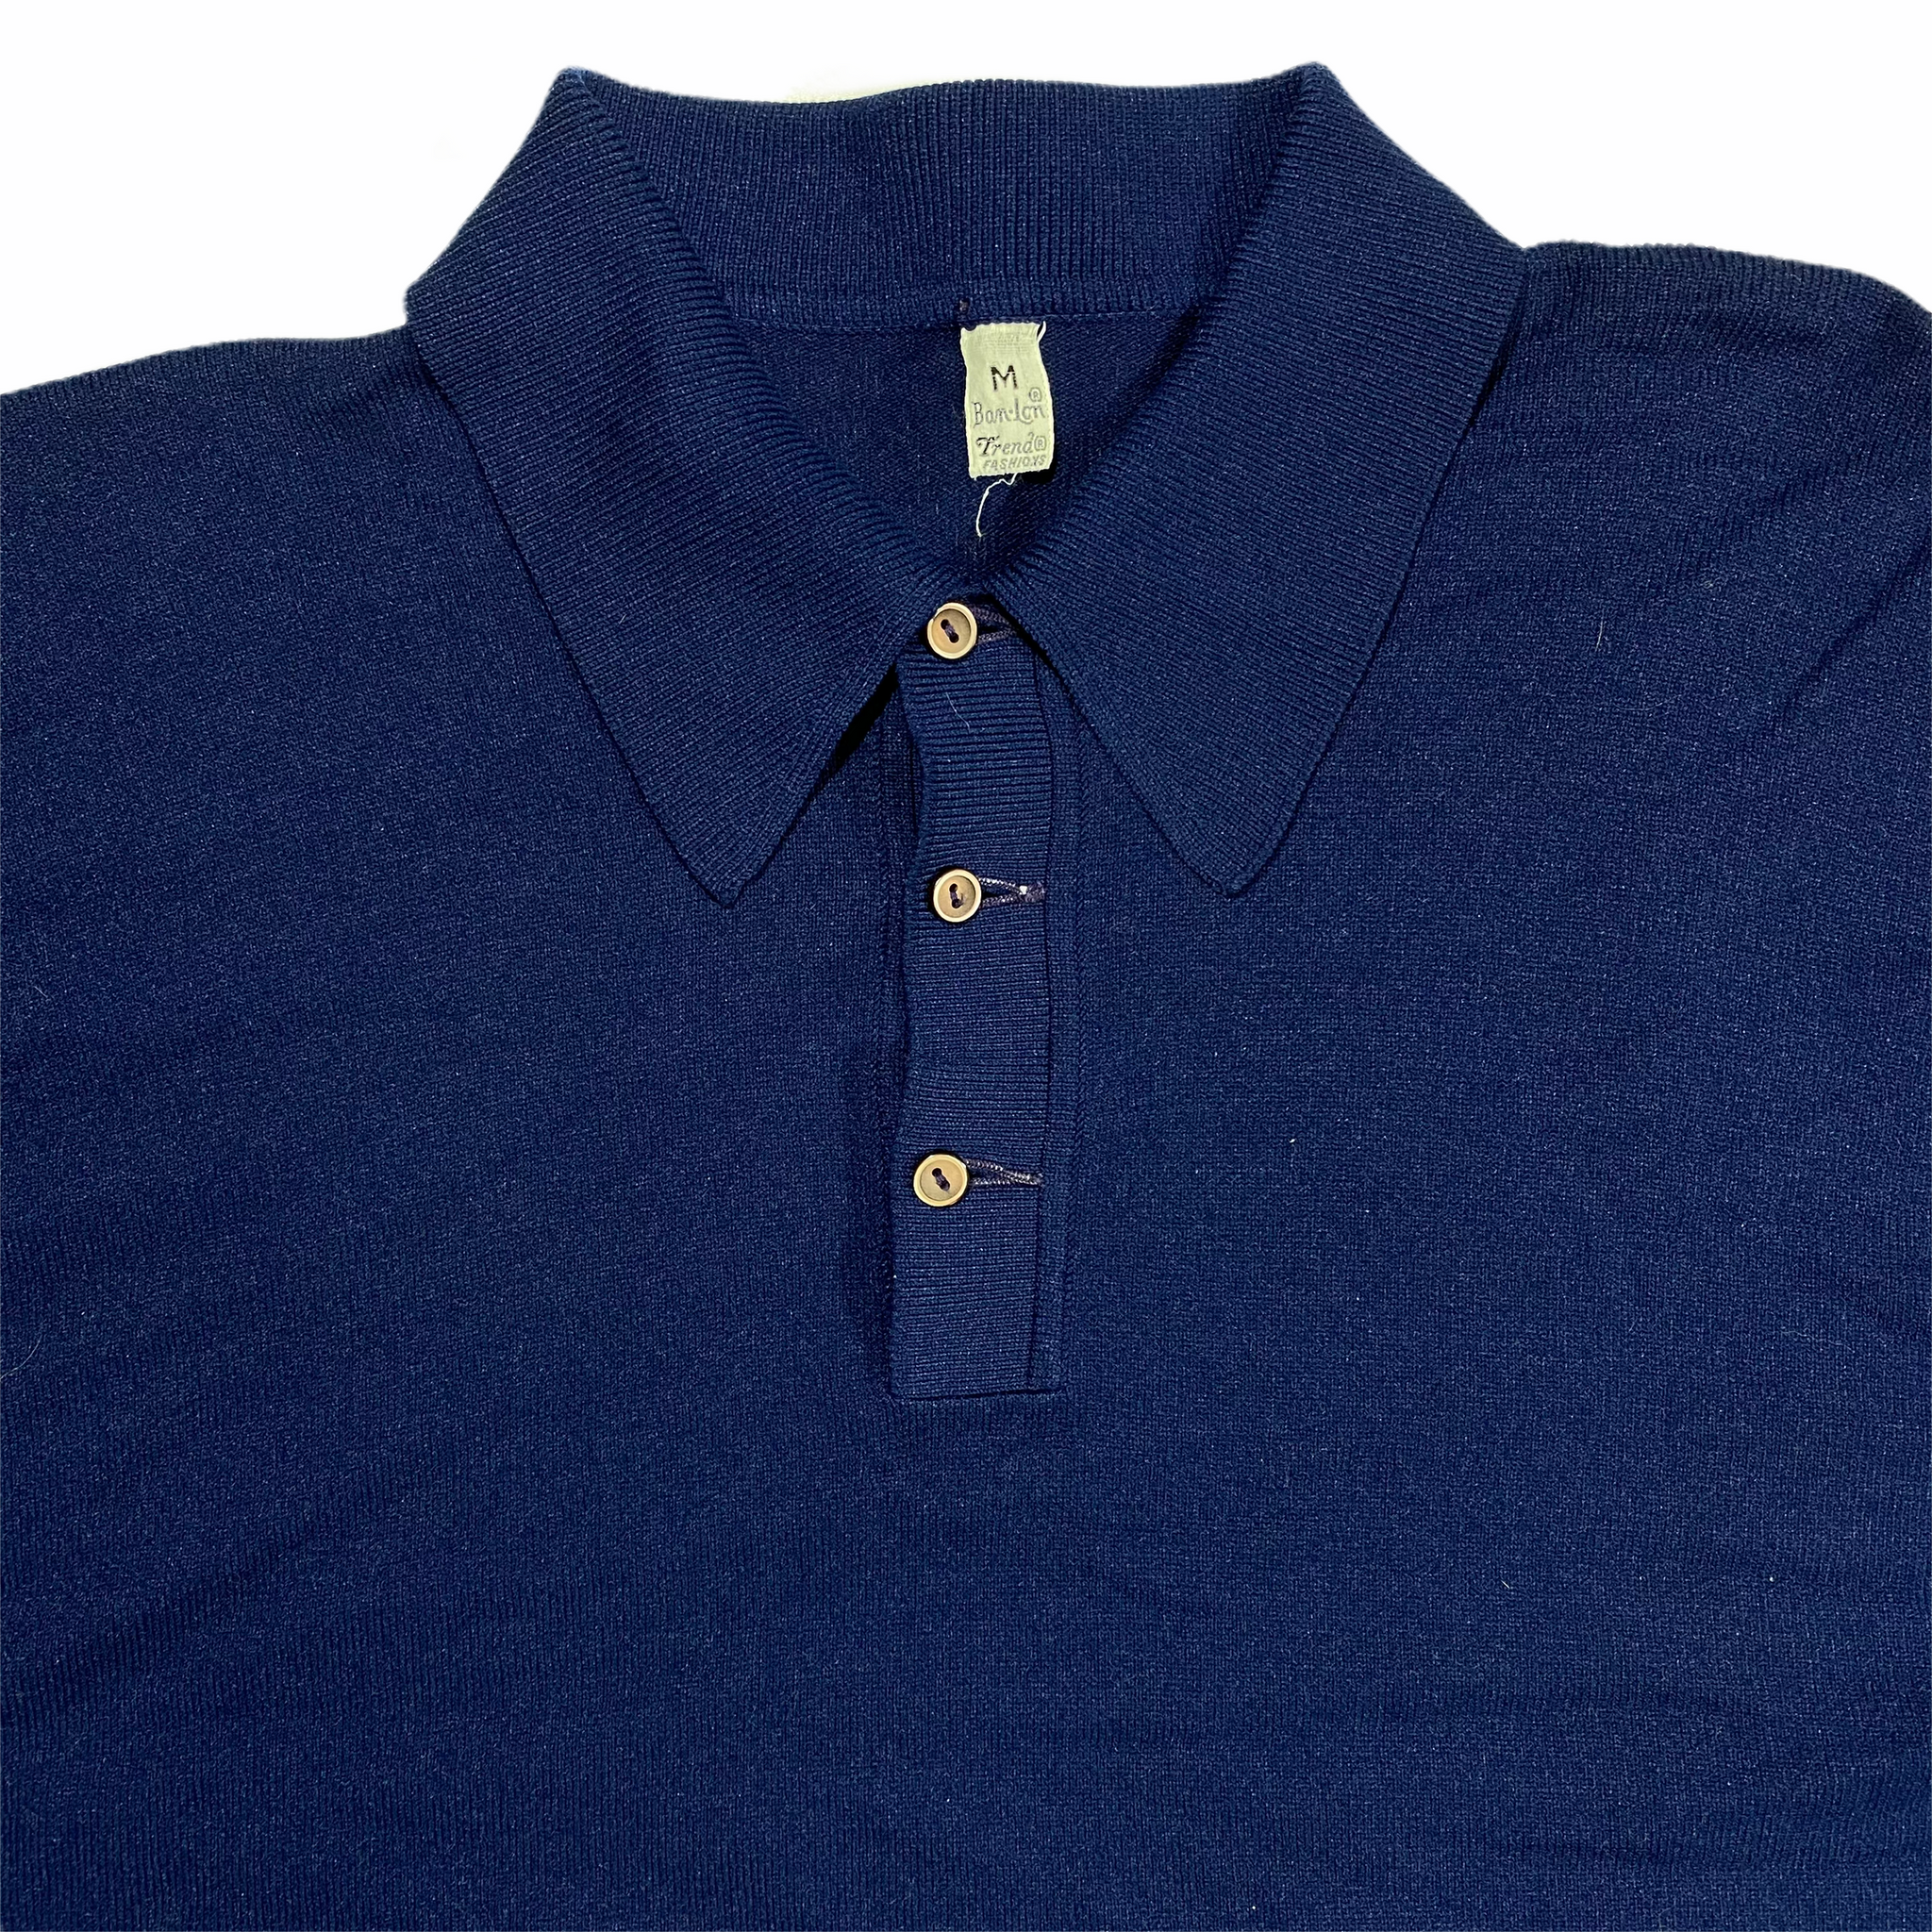 70s Wiseguy style polo shirt. soft. medium